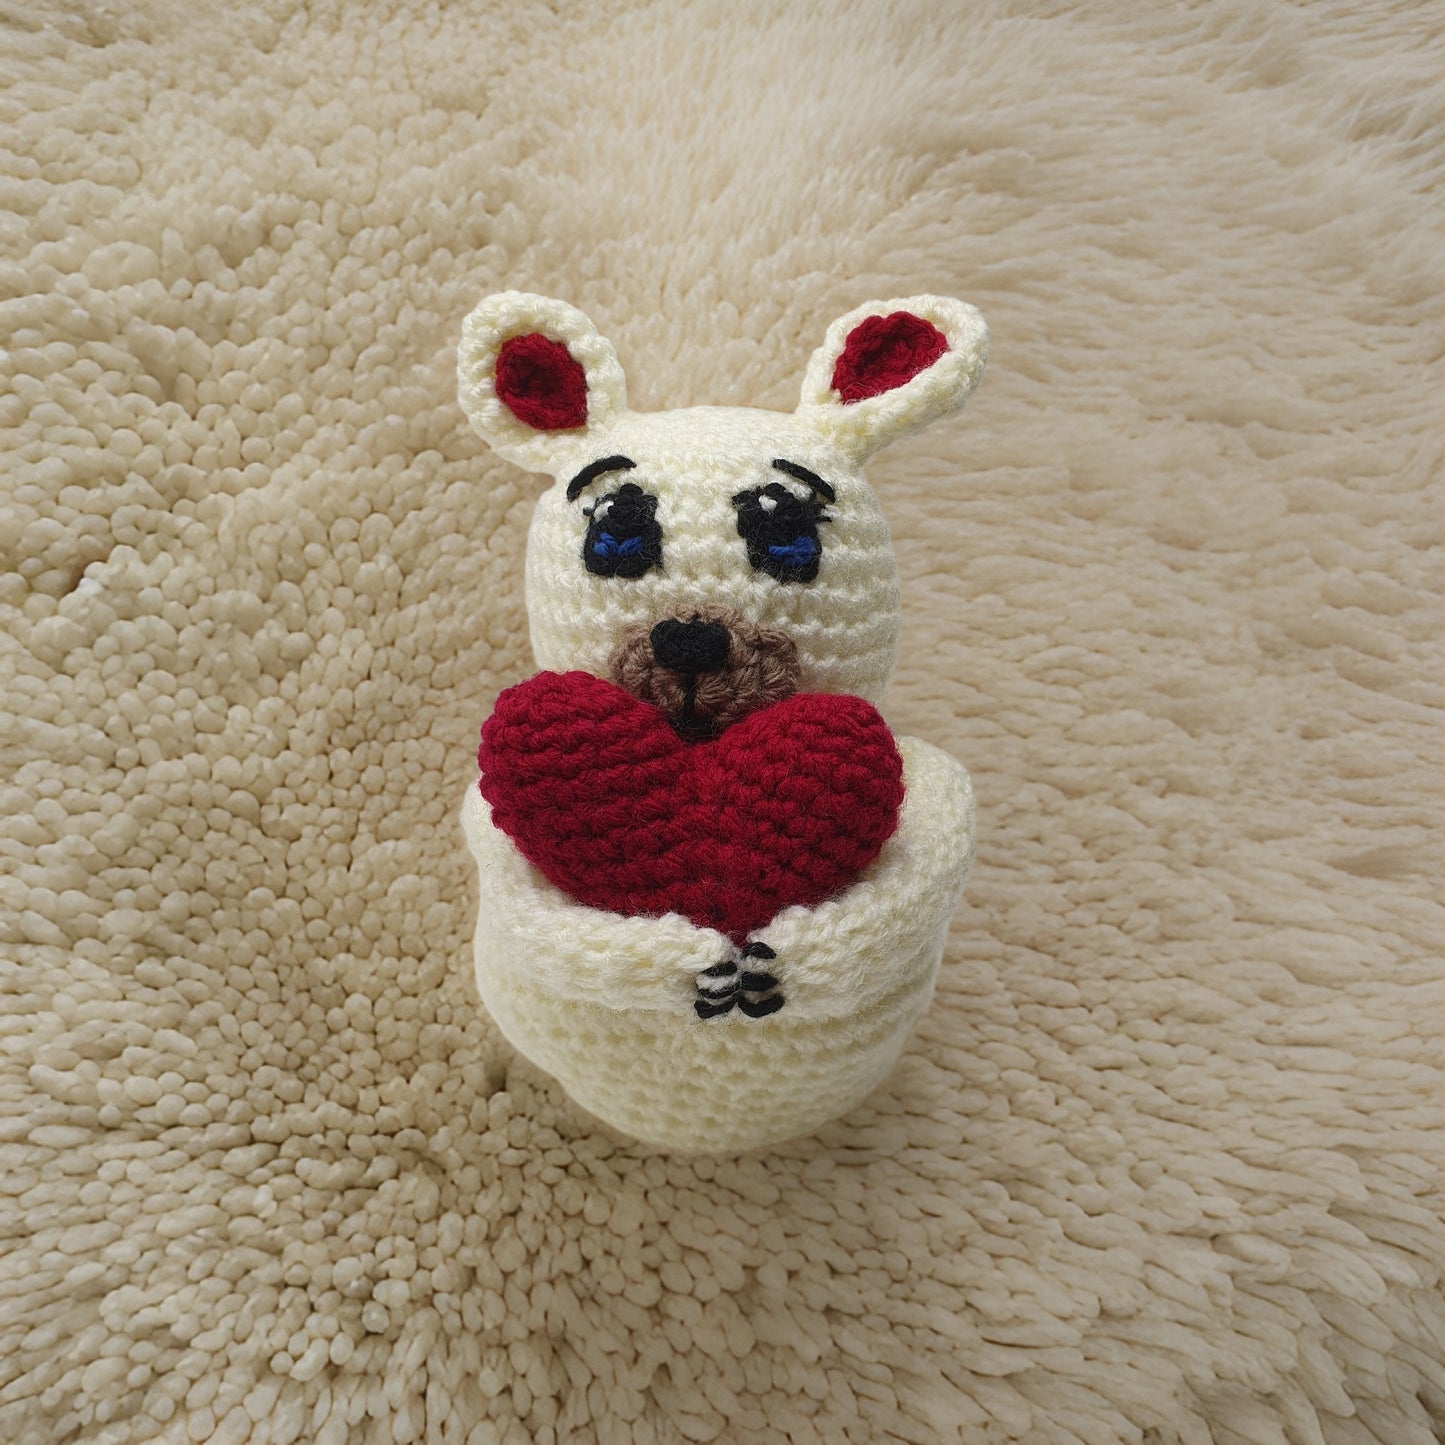 Crochet Teddy Bear with Love Heart